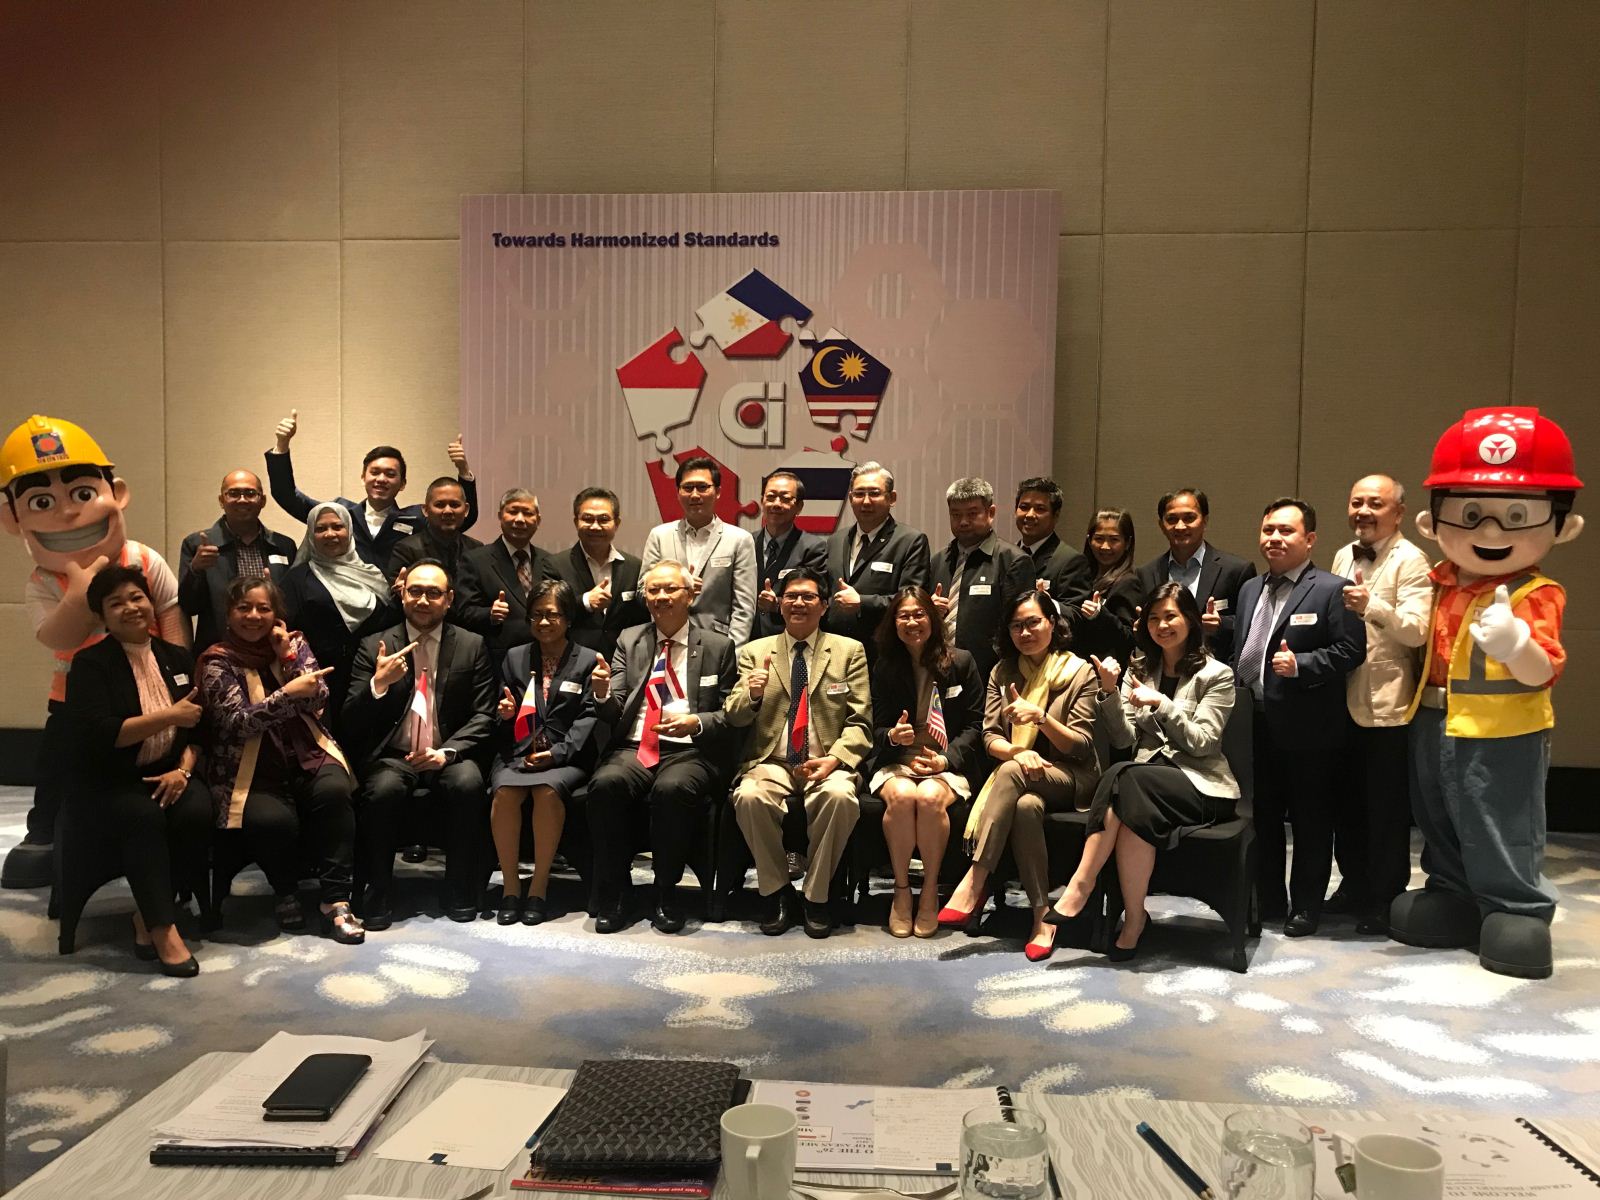 VIBCA tham dự Hội nghị CNGS Asean  lần thứ 26 tại Philippines